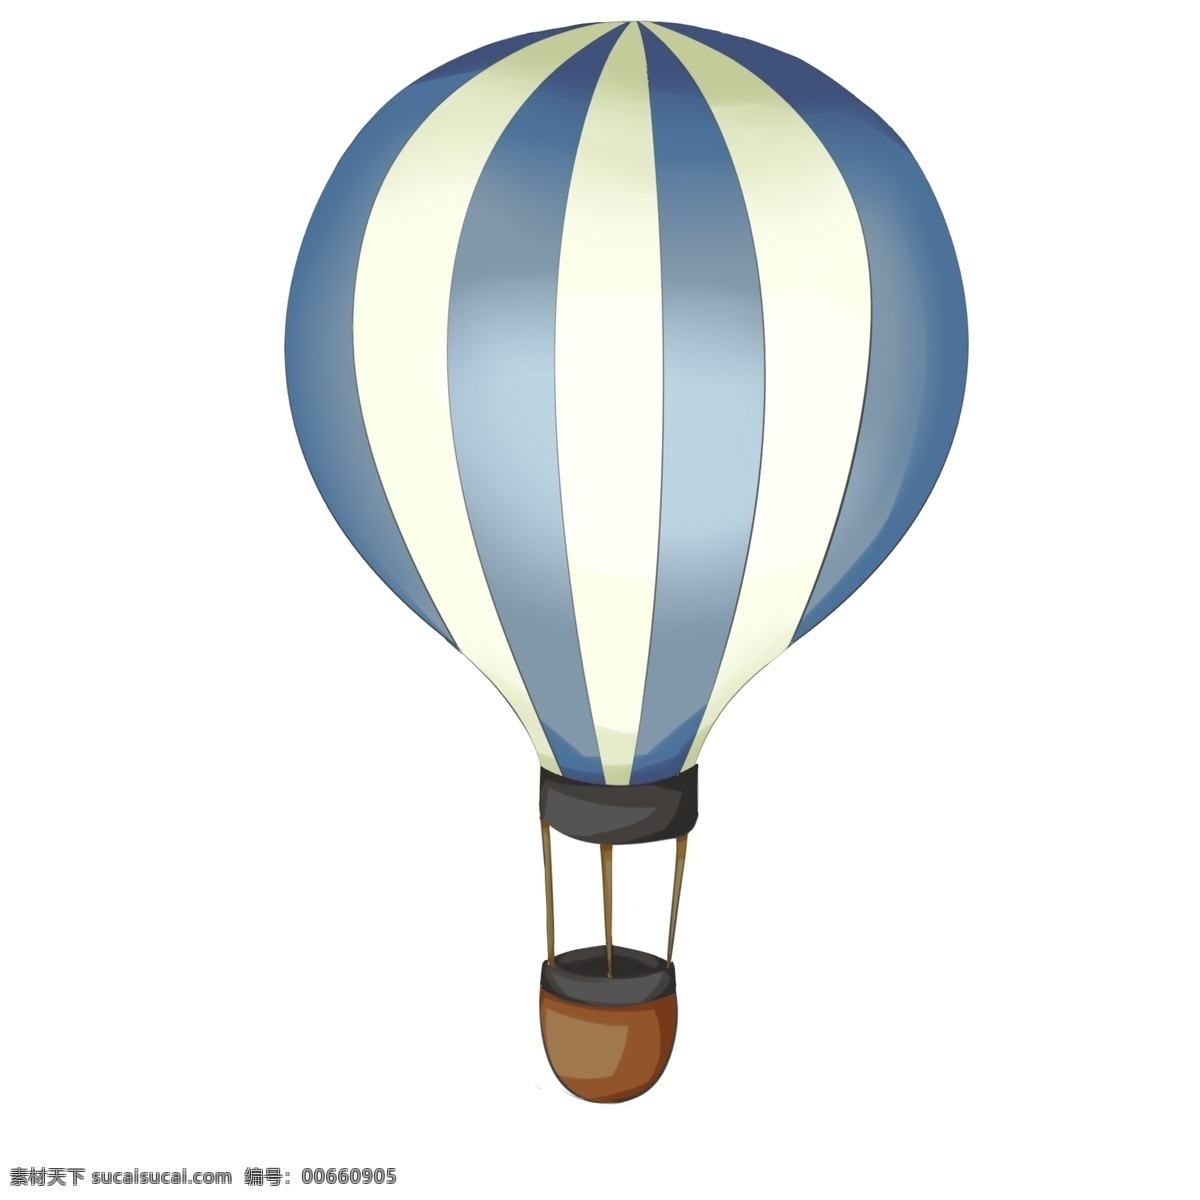 漂亮 热气球 手绘 插画 手绘热气球 卡通热气球 热气球装饰 热气球插画 漂亮的热气球 飘着的热气球